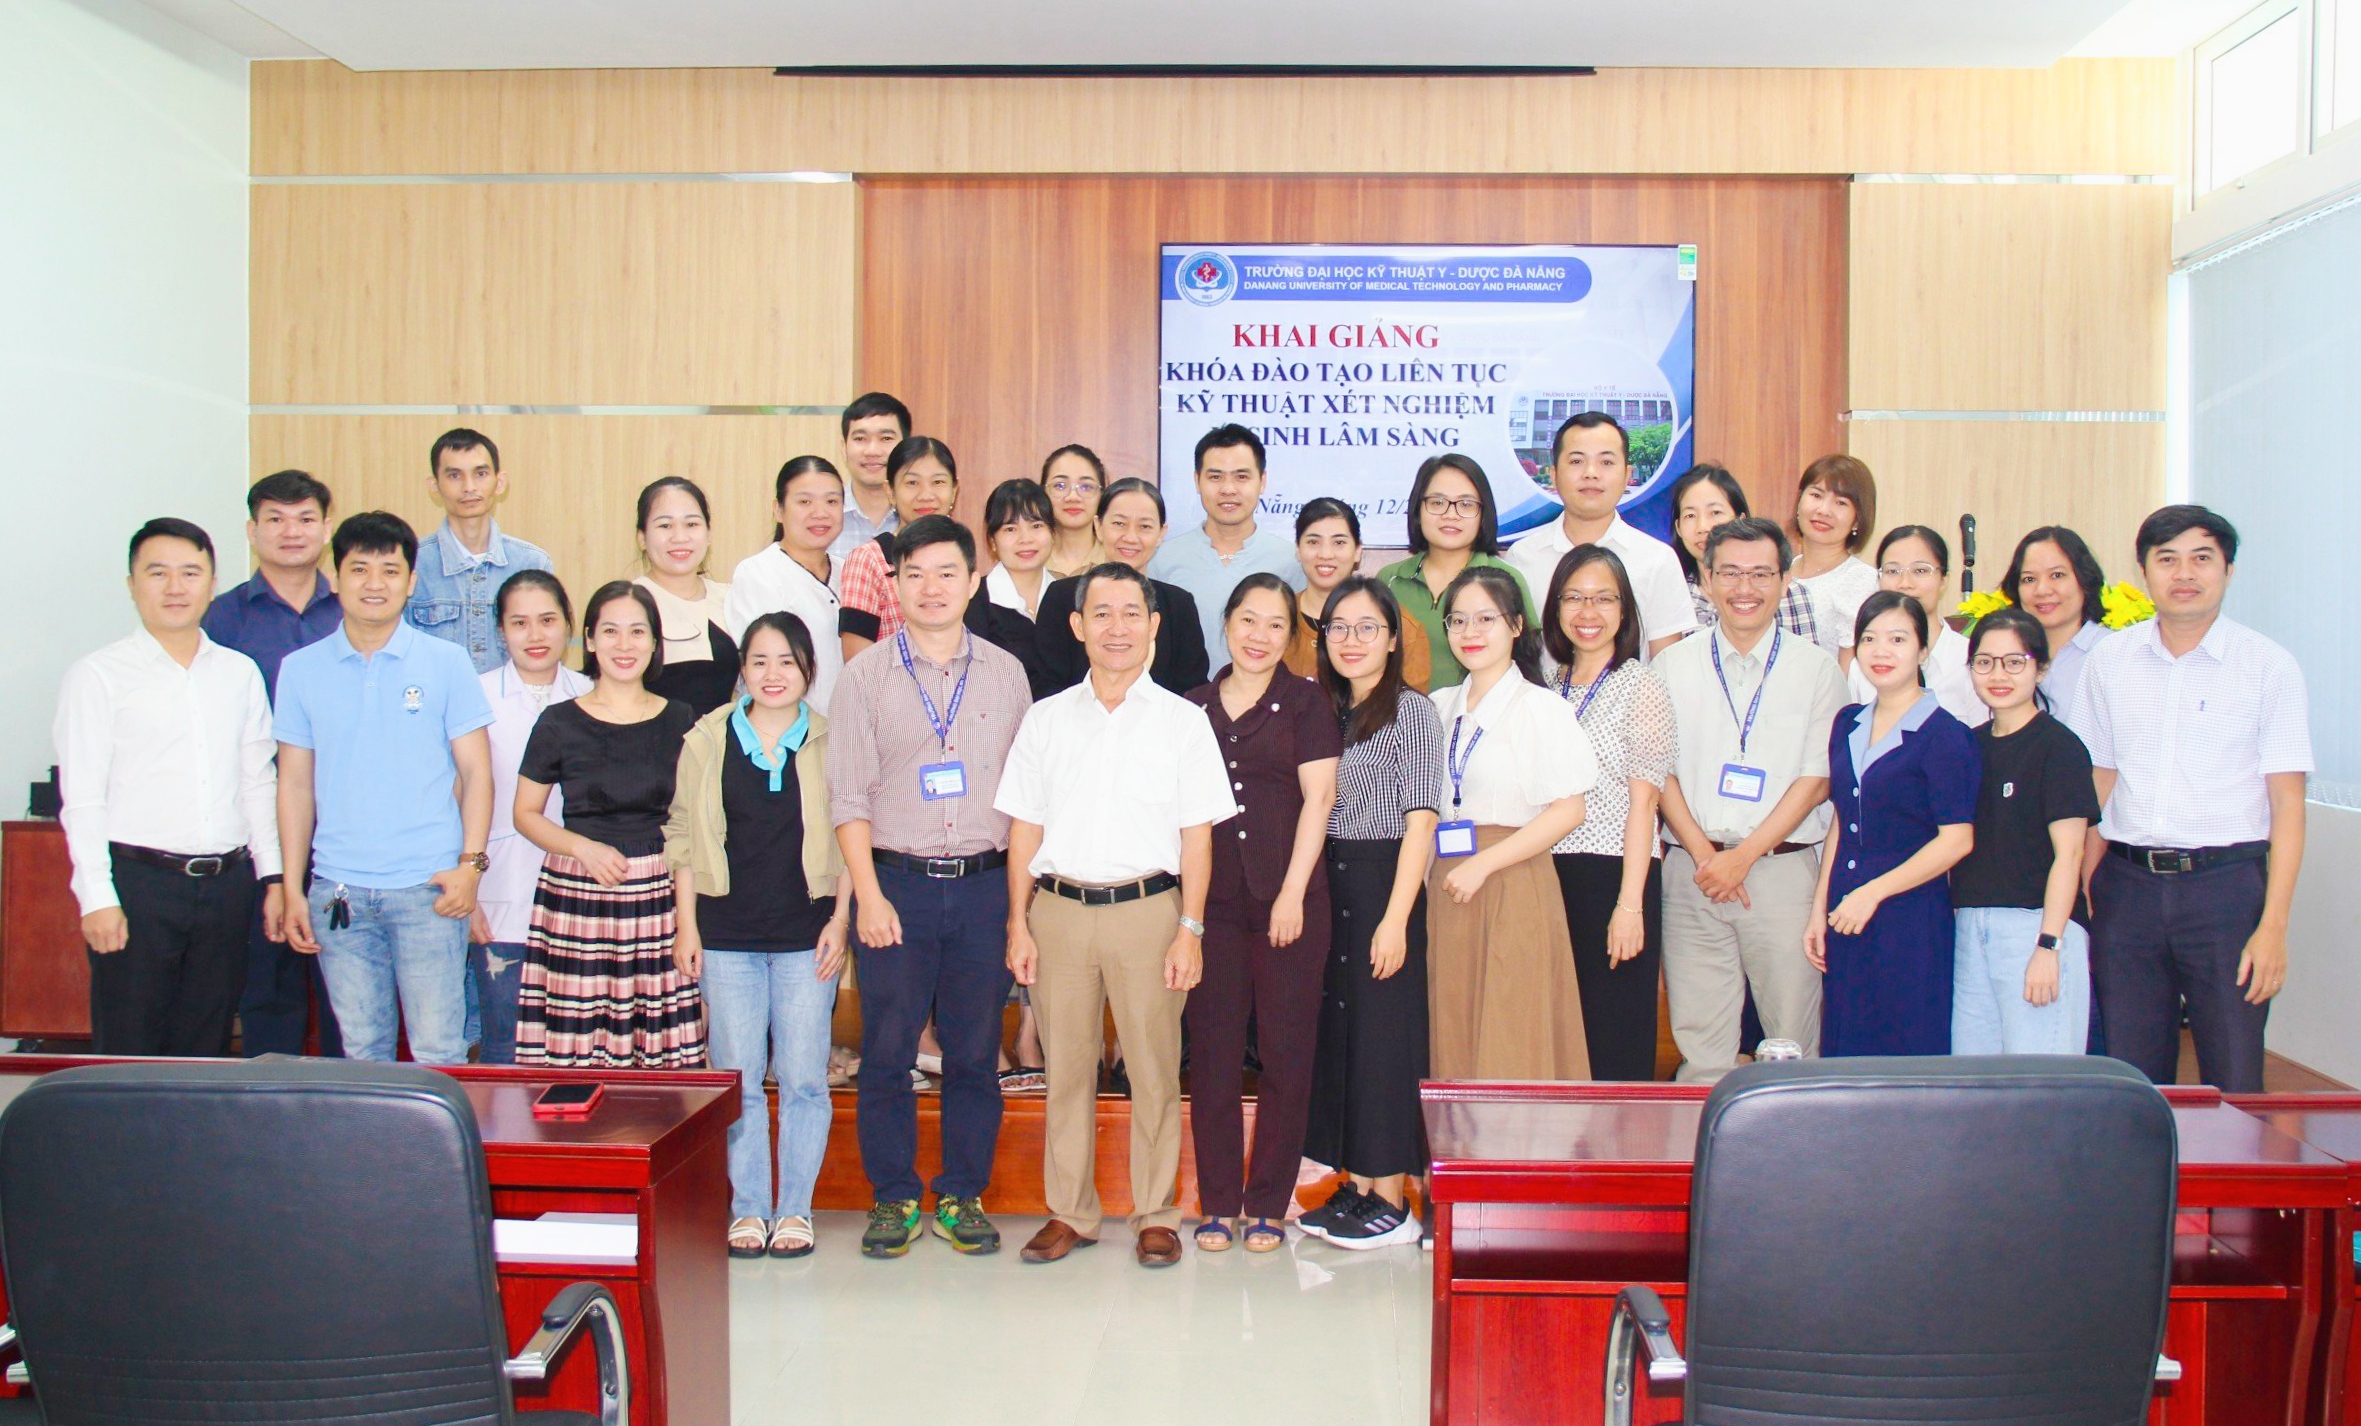 Trường Đại học Kỹ thuật Y - Dược Đà Nẵng tổ chức khai giảng khóa đào tạo liên tục  “Kỹ thuật Xét nghiệm vi sinh lâm sàng”